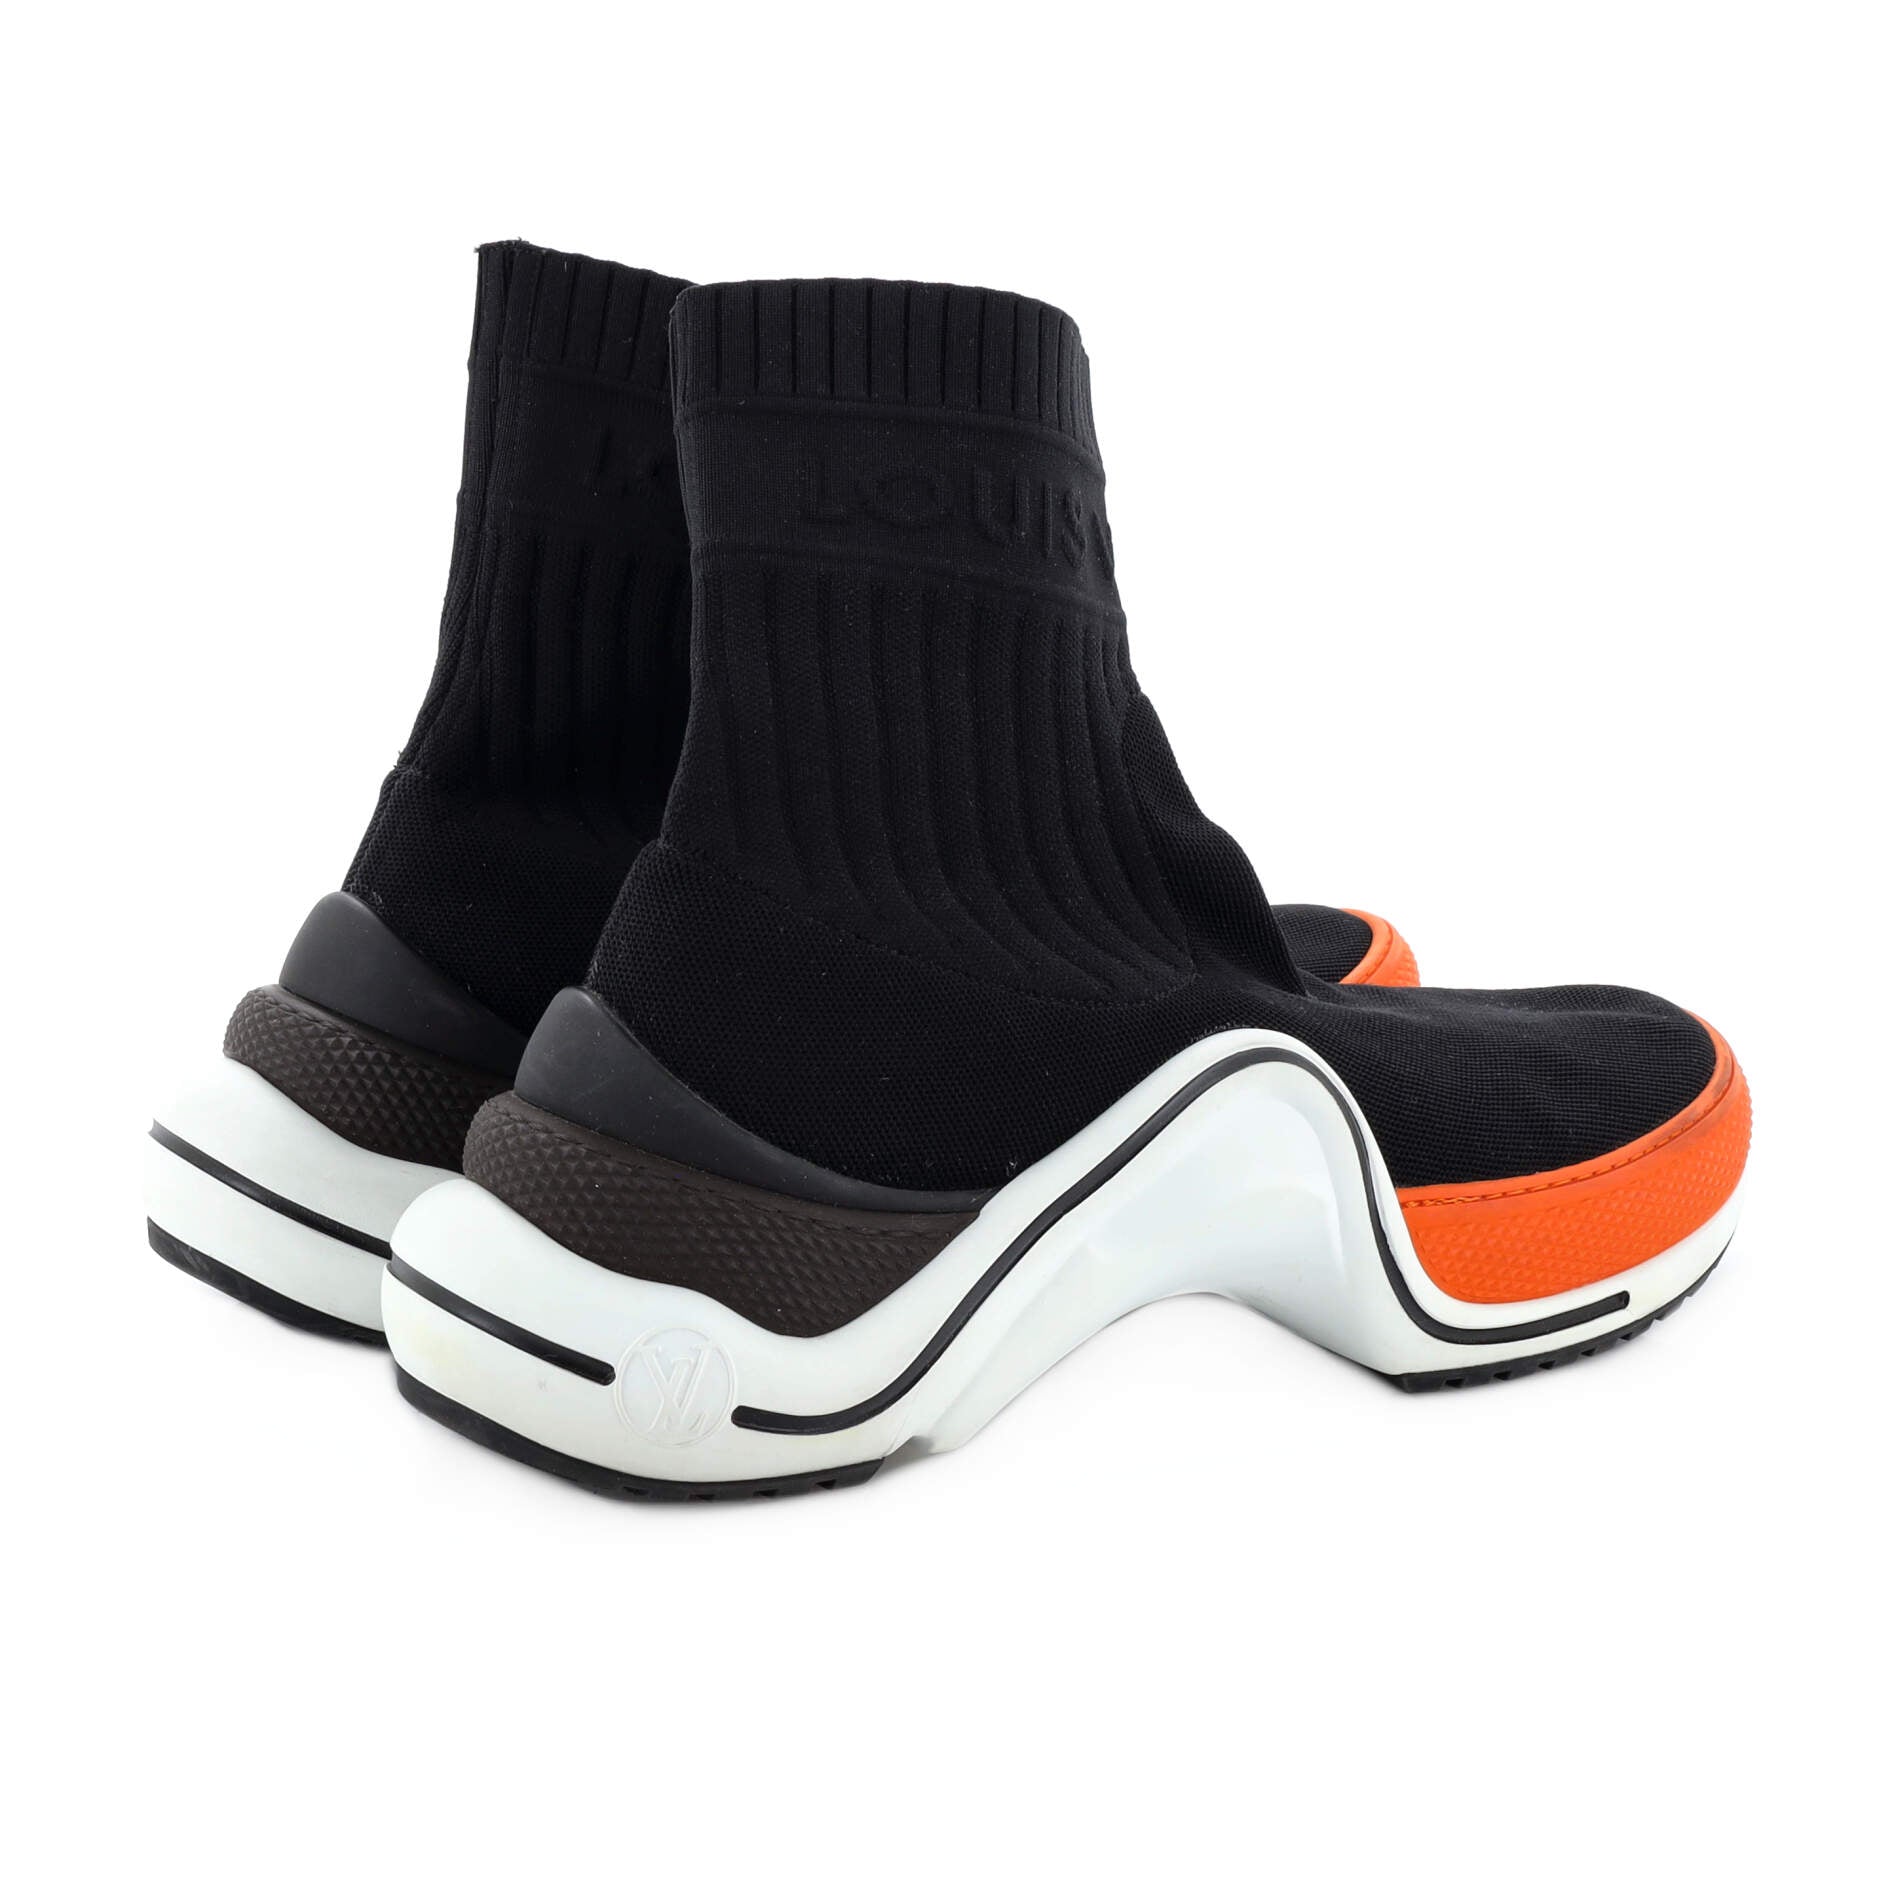 LOUIS VUITTON Stretch Textile Monogram LV Archlight Sneaker Boots